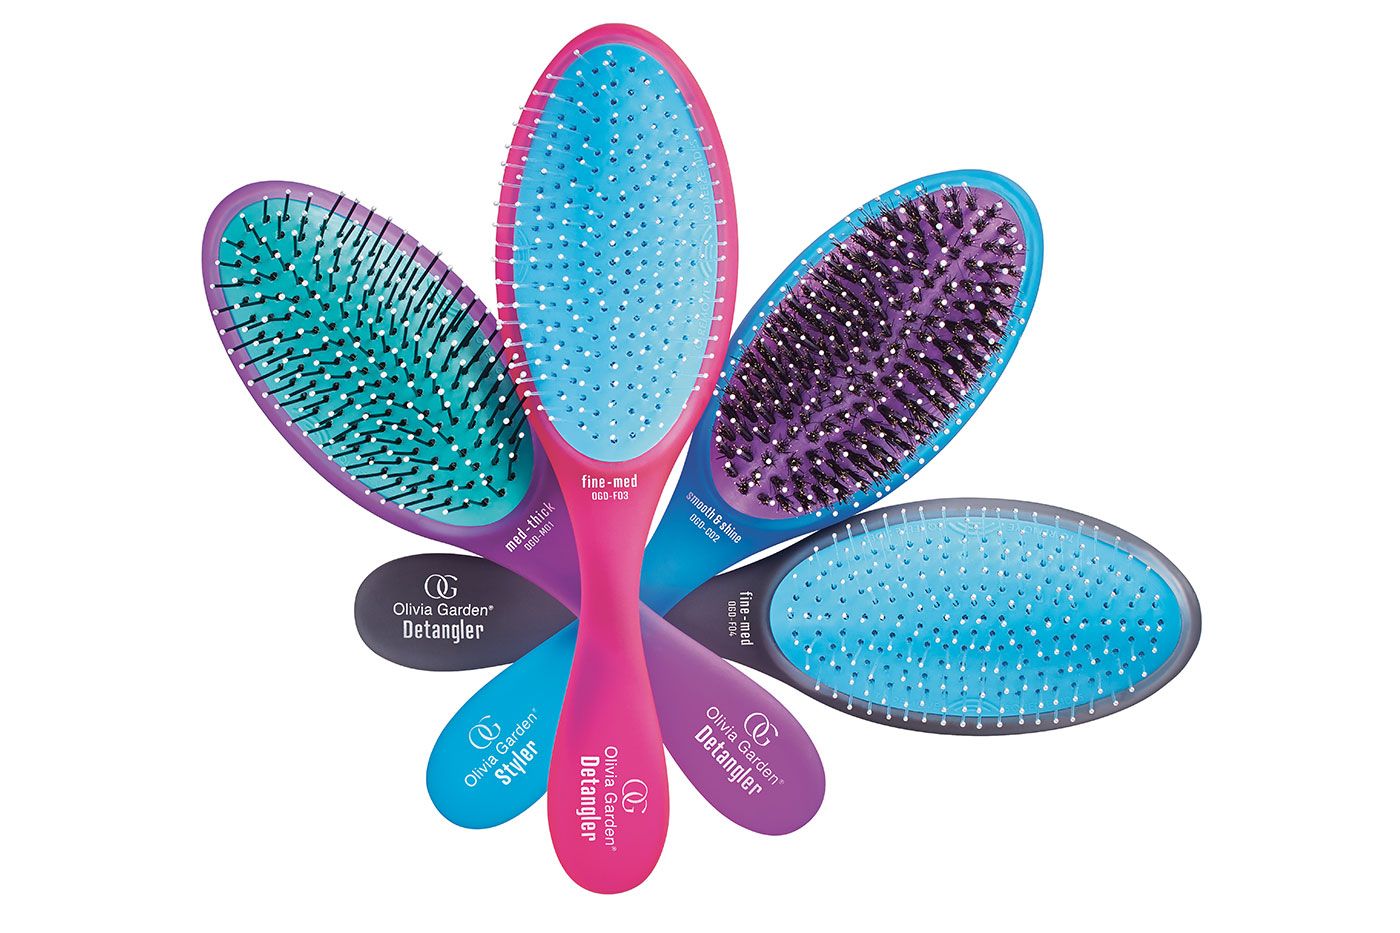 Olivia Garden’s hairbrush for detangling knots